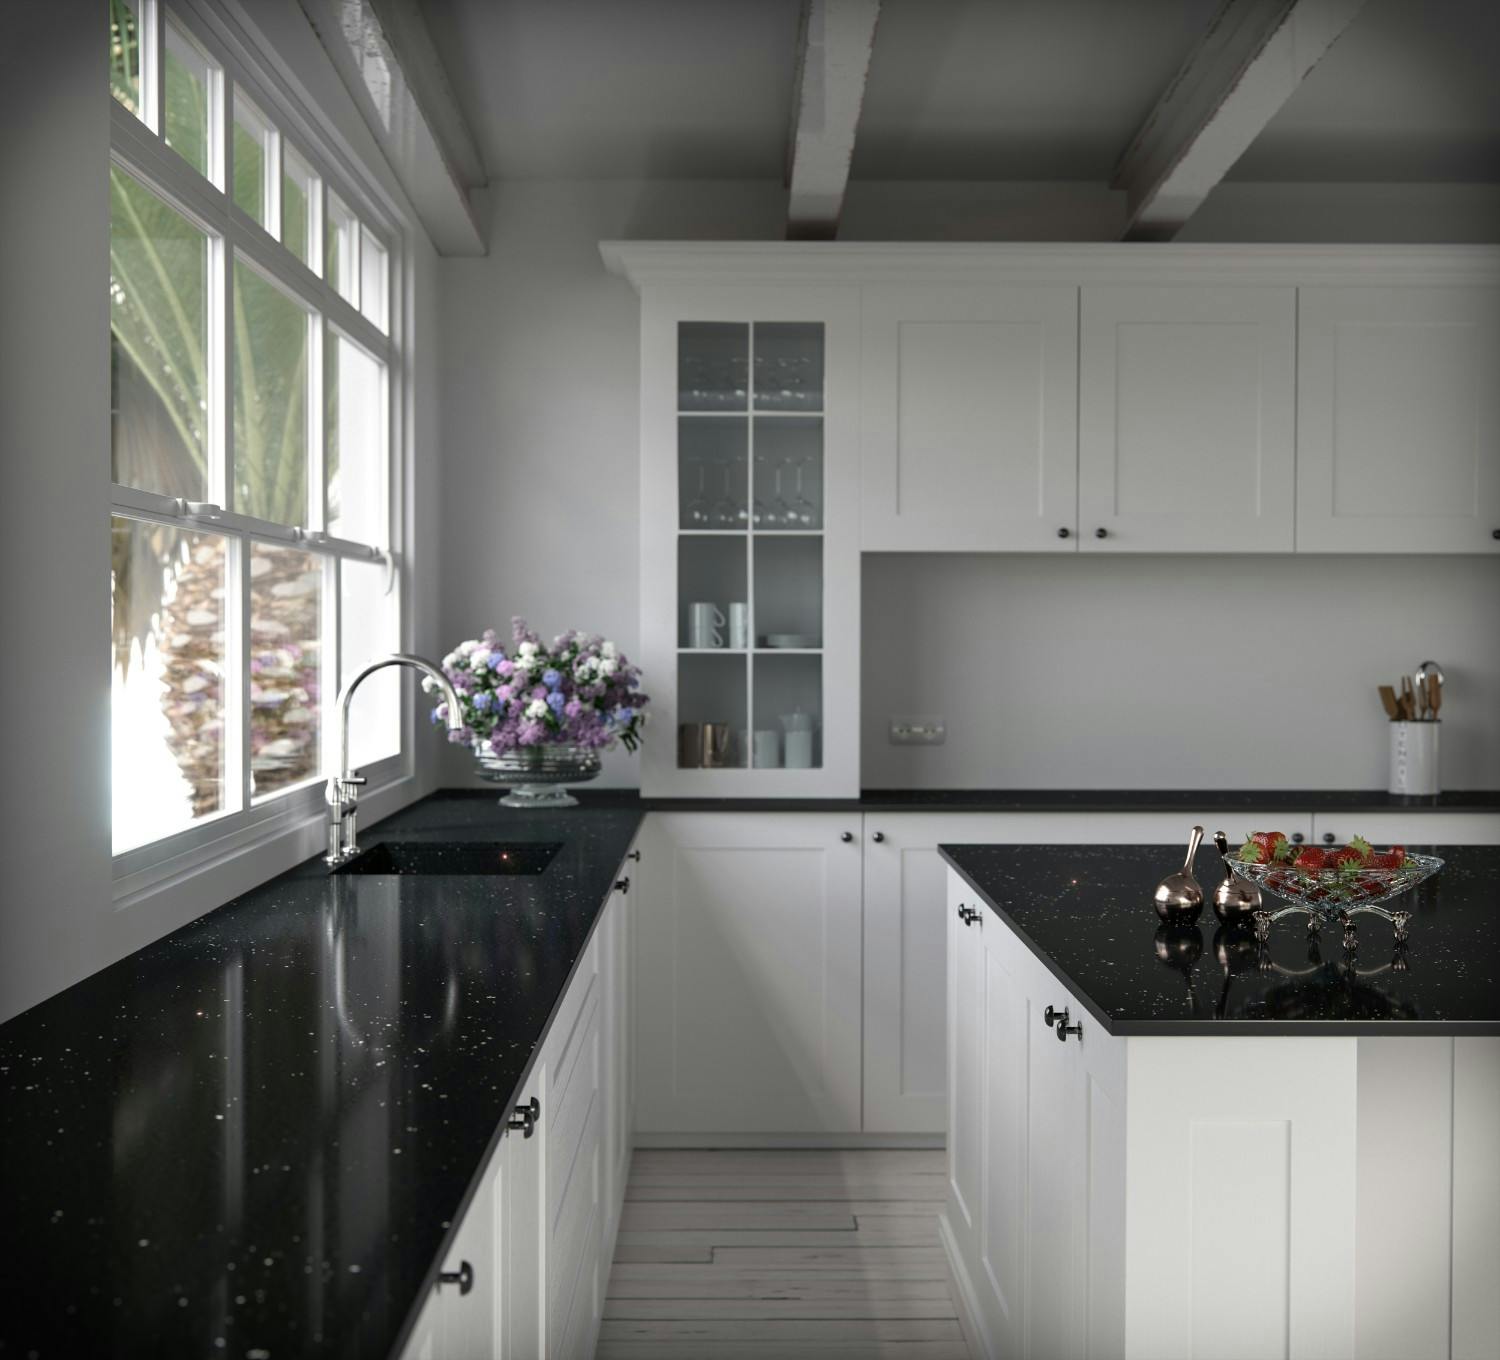 black and white kitchen backsplash ideas